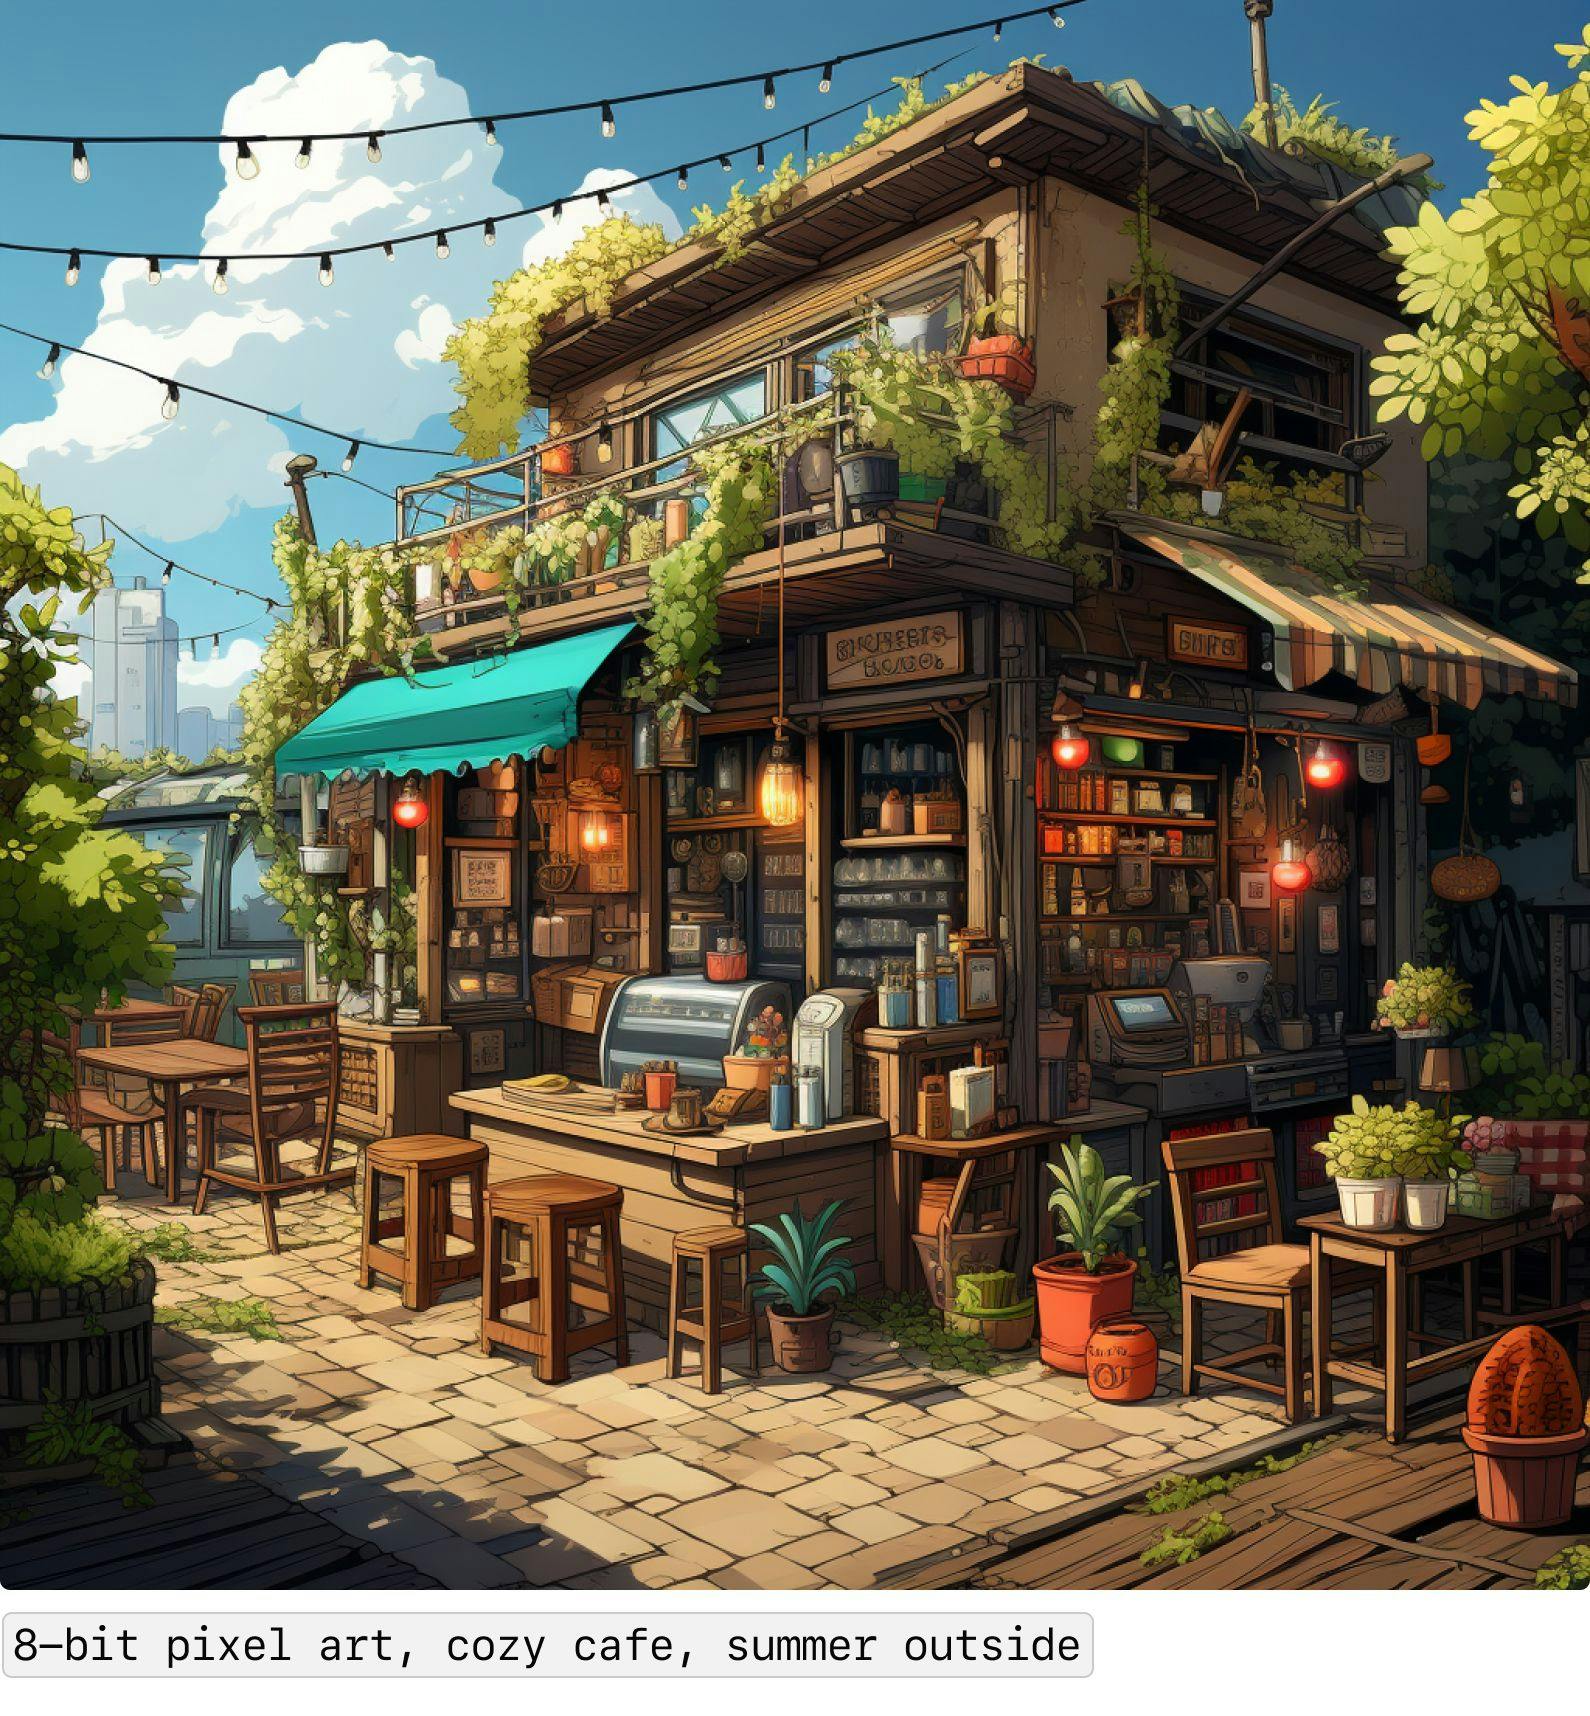 8-bit pixel art, cozy cafe, summer outside